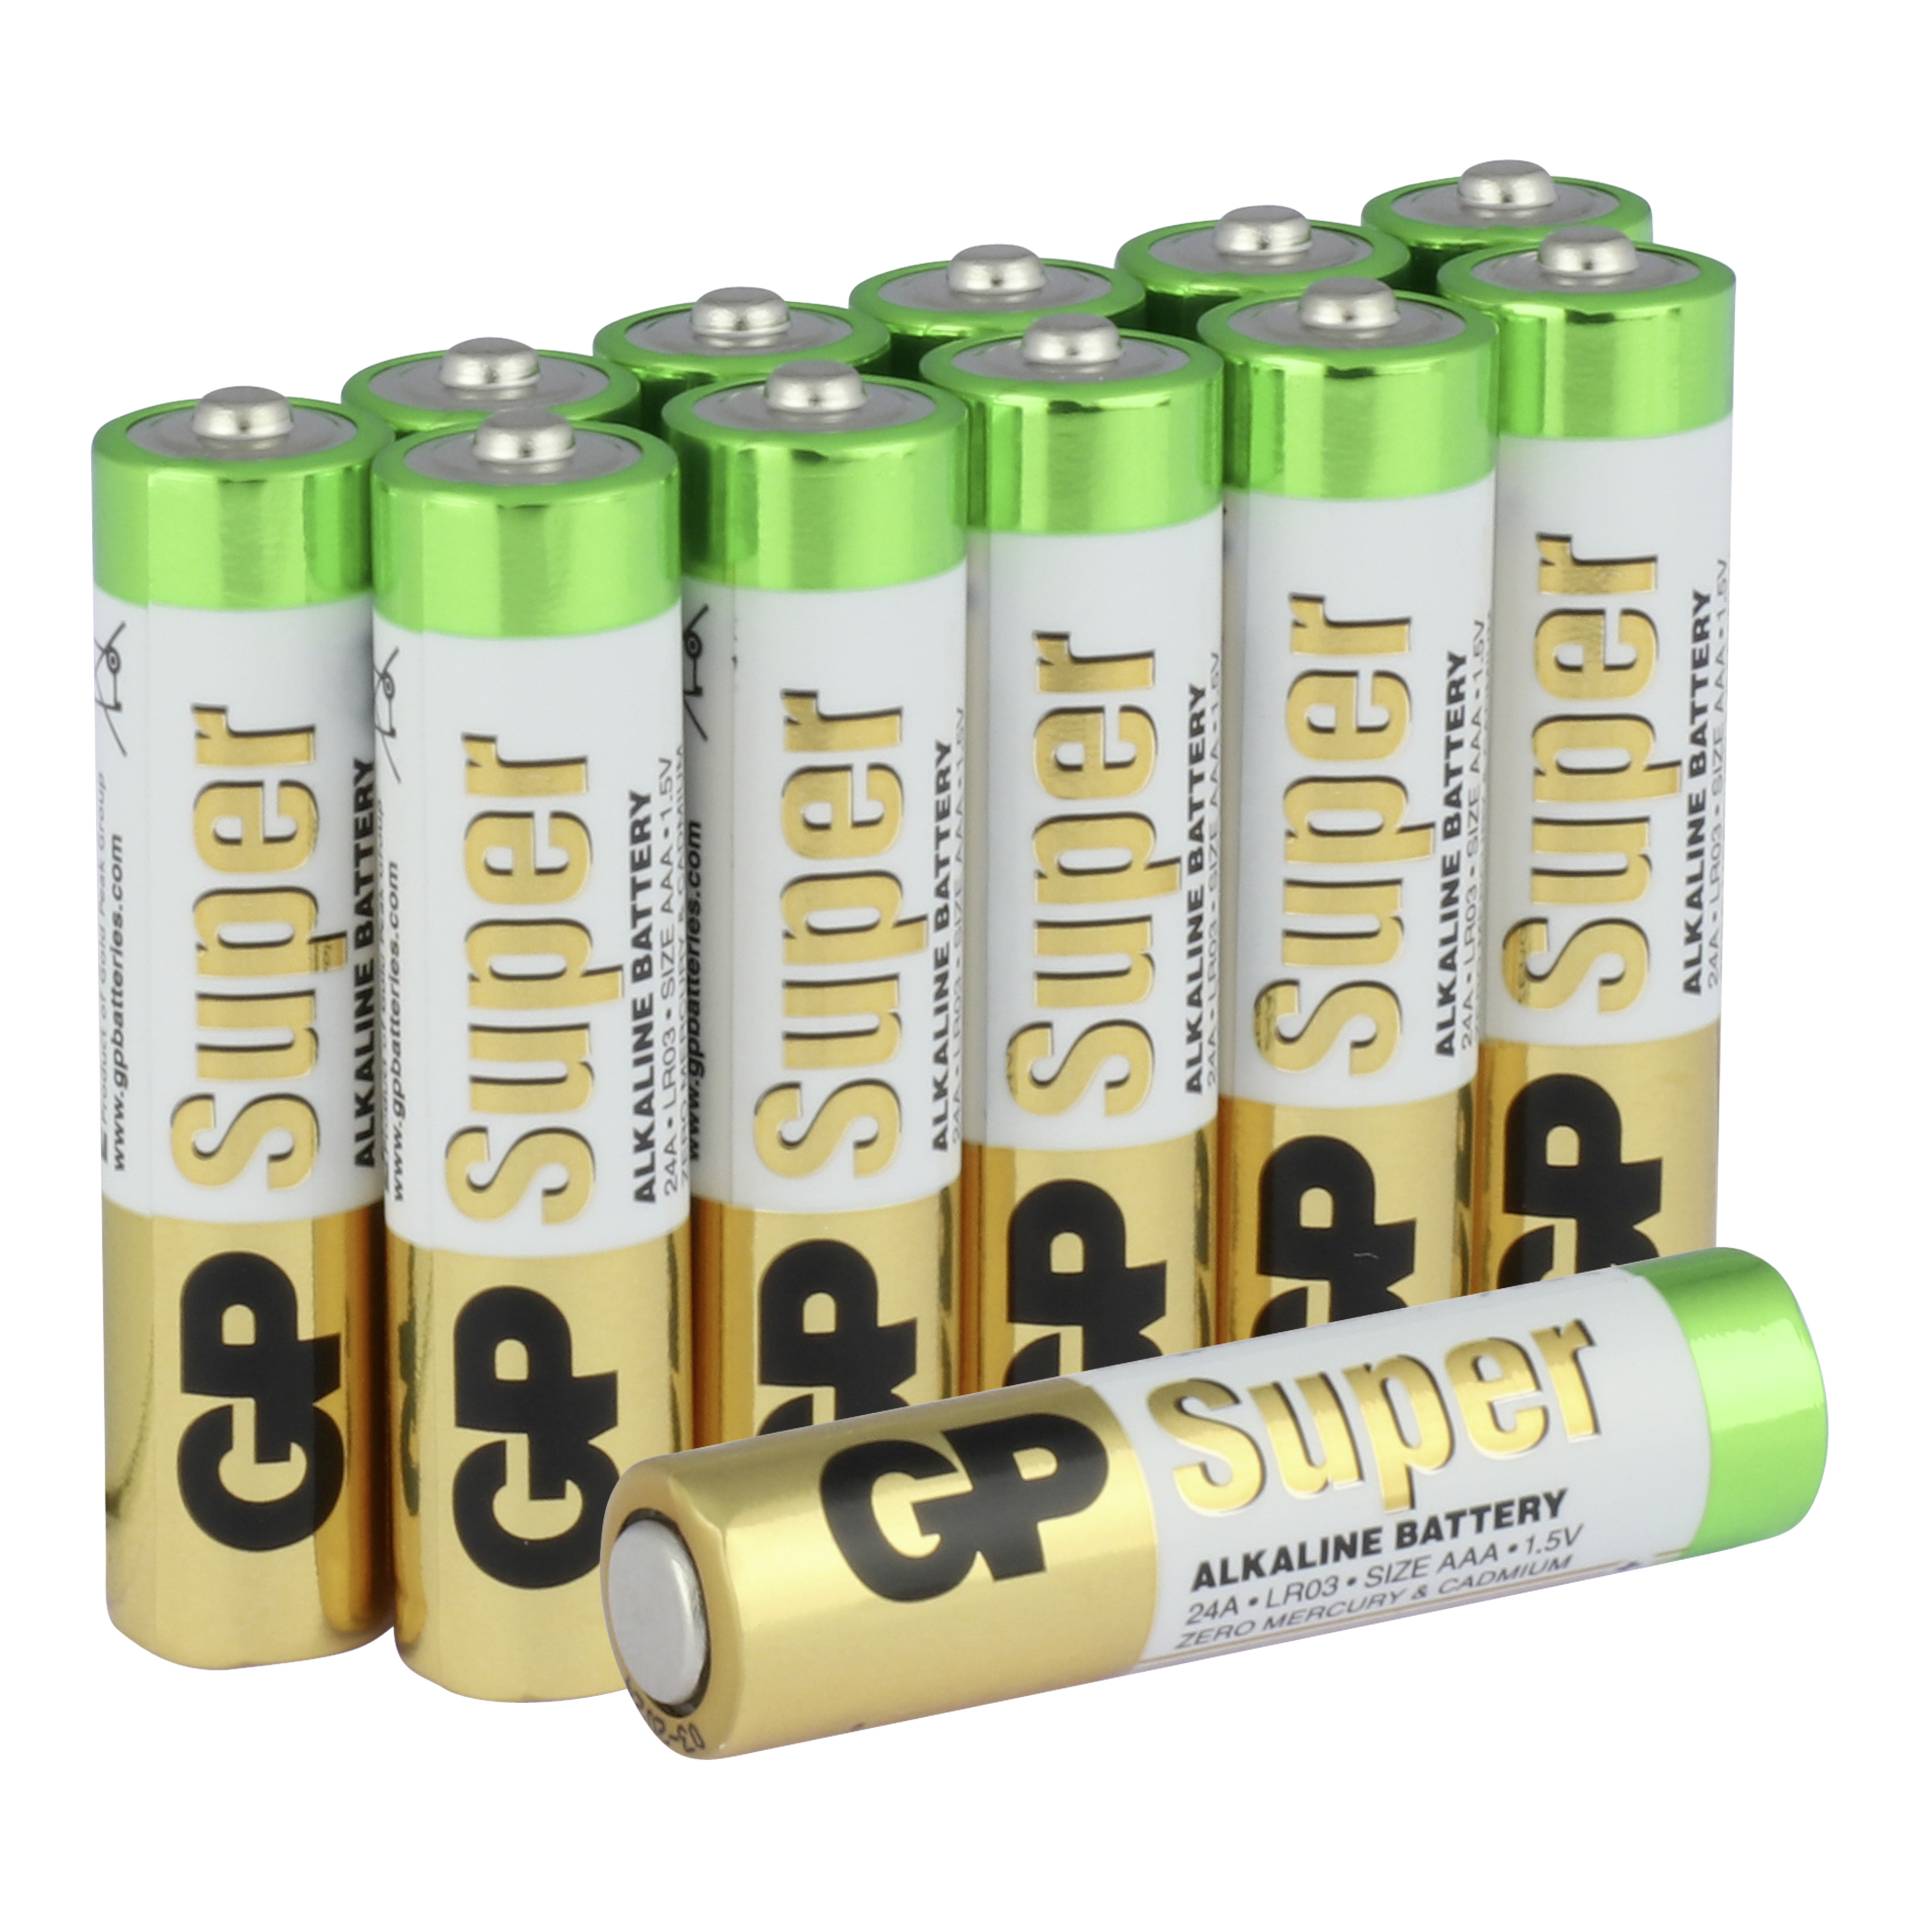 Gp batteries super. Батарейка GP super Alkaline AAA. AAA батарейка GP super Alkaline 24a lr03. Alkaline Battery 1.5v lr03. Батарейки GP super 3+1.